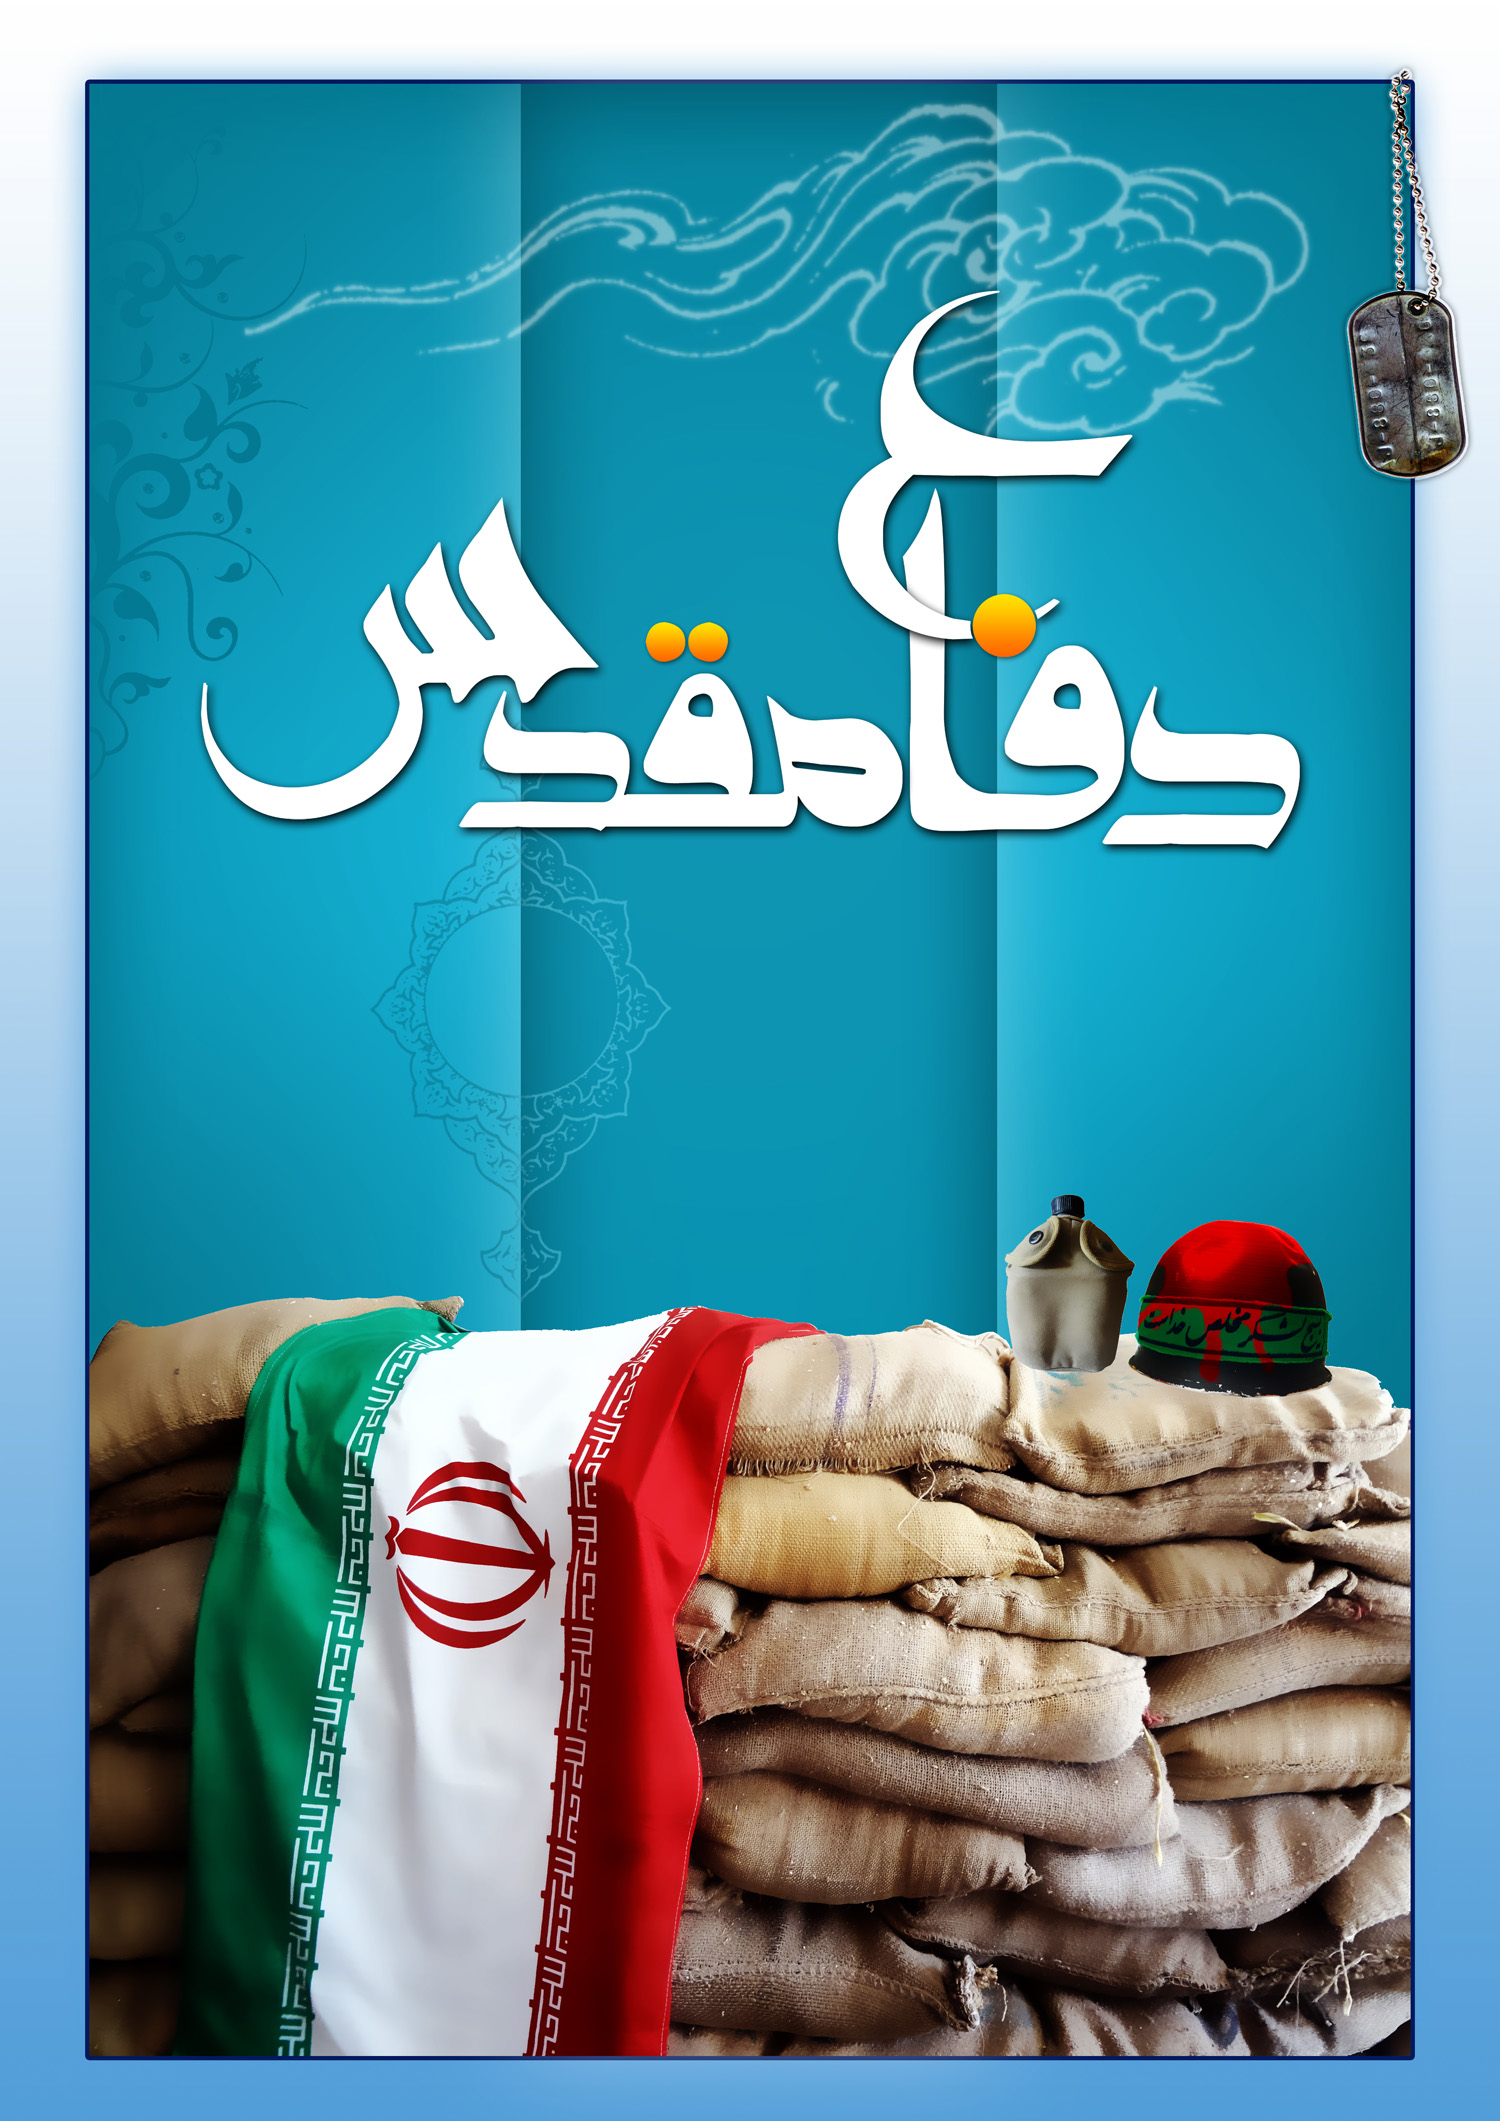 تصاویر و پوسترهای جدید برای دفاع مقدس - سردارگمنام گیلانی